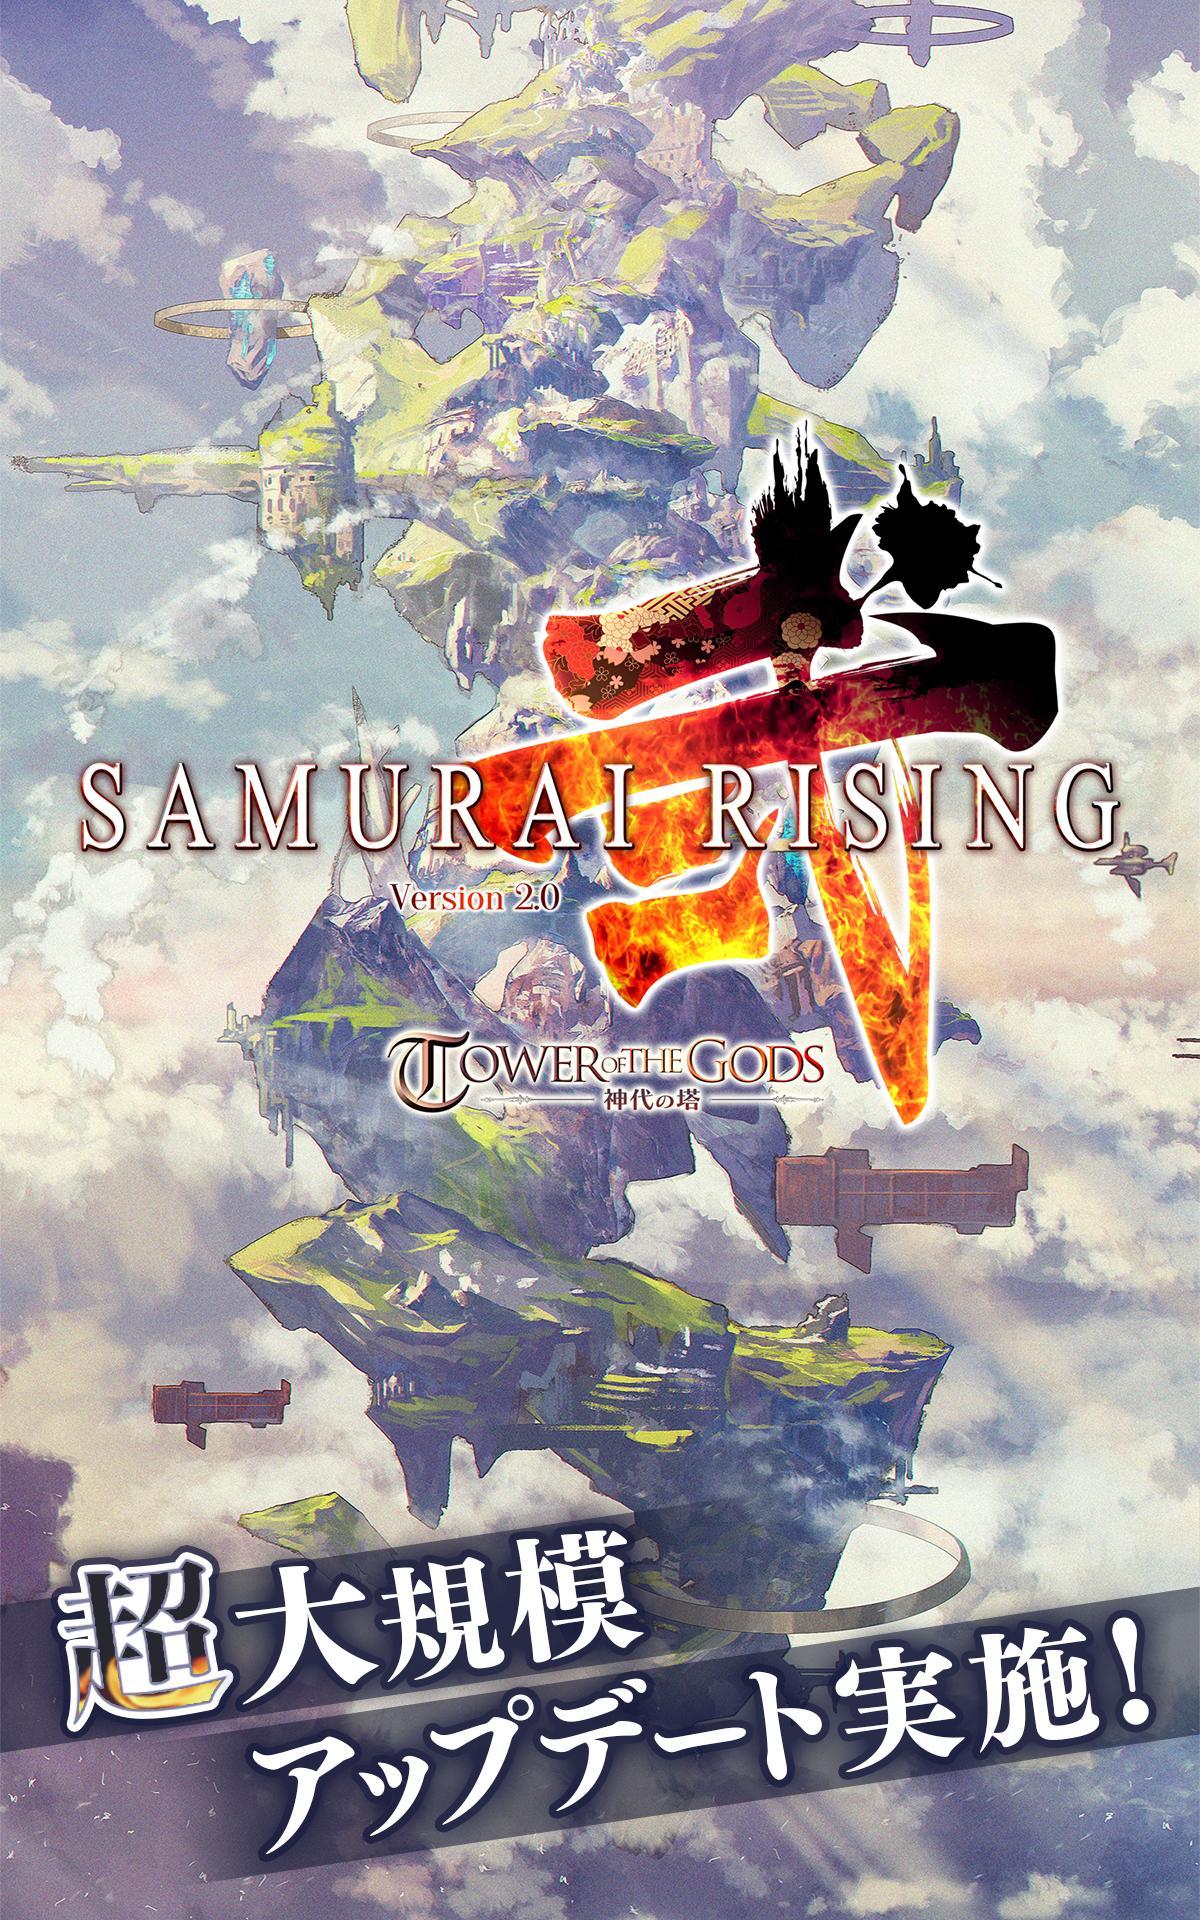 Screenshot 1 of samurai rising 3.60.1